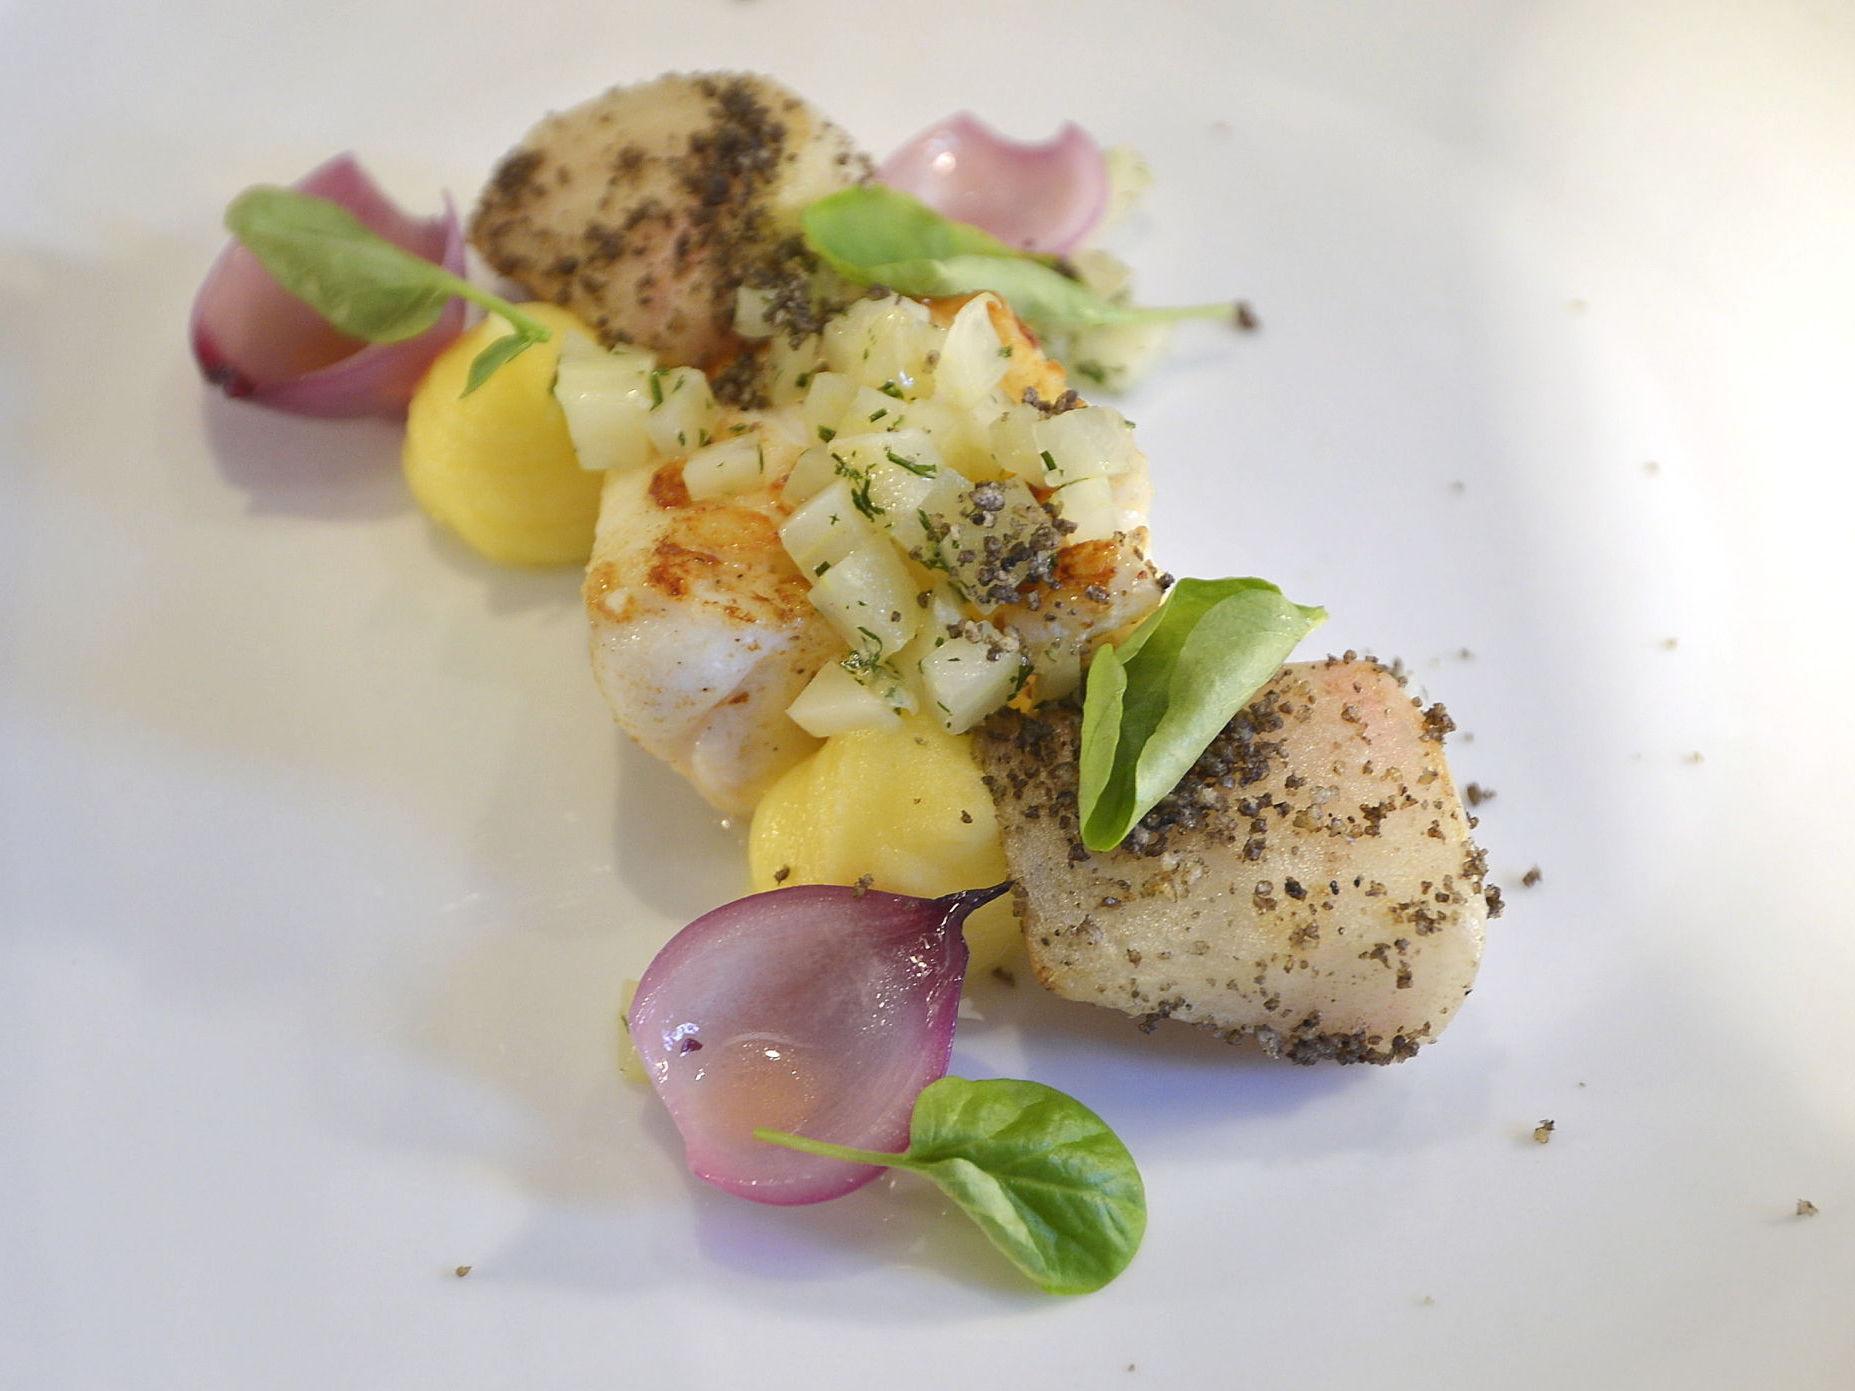 LEKKERT: Maten ble lekkert presentert under besøket på De 4 roser. Følg André på Instagram for flere bilder fra måltidet. Foto: Terje Mortensen/VG